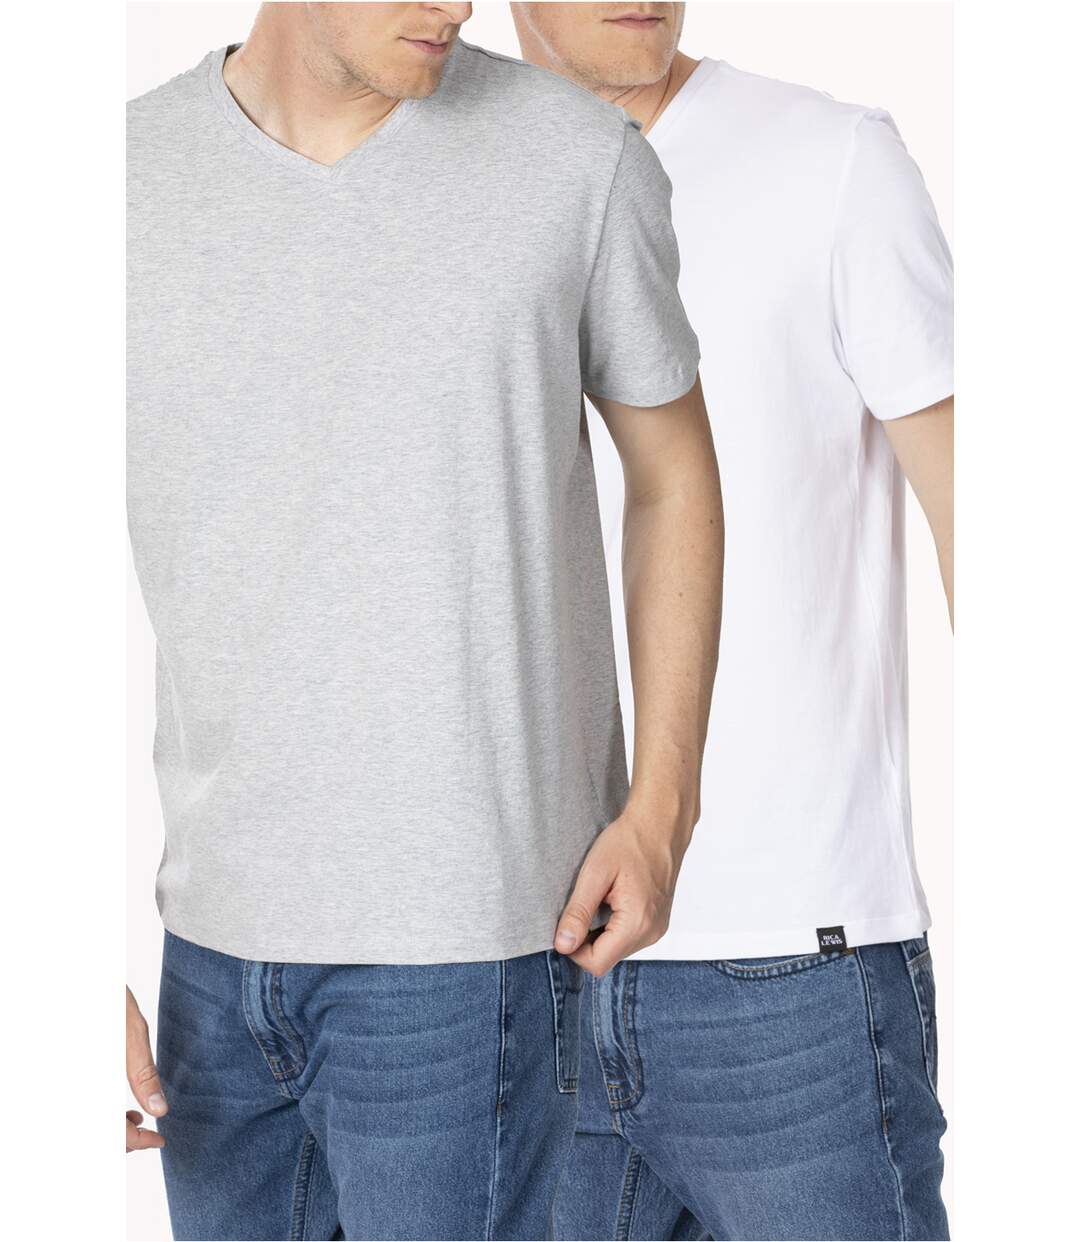 T-shirts essentiels coton bio, lot de 2 BLANC/GRIS